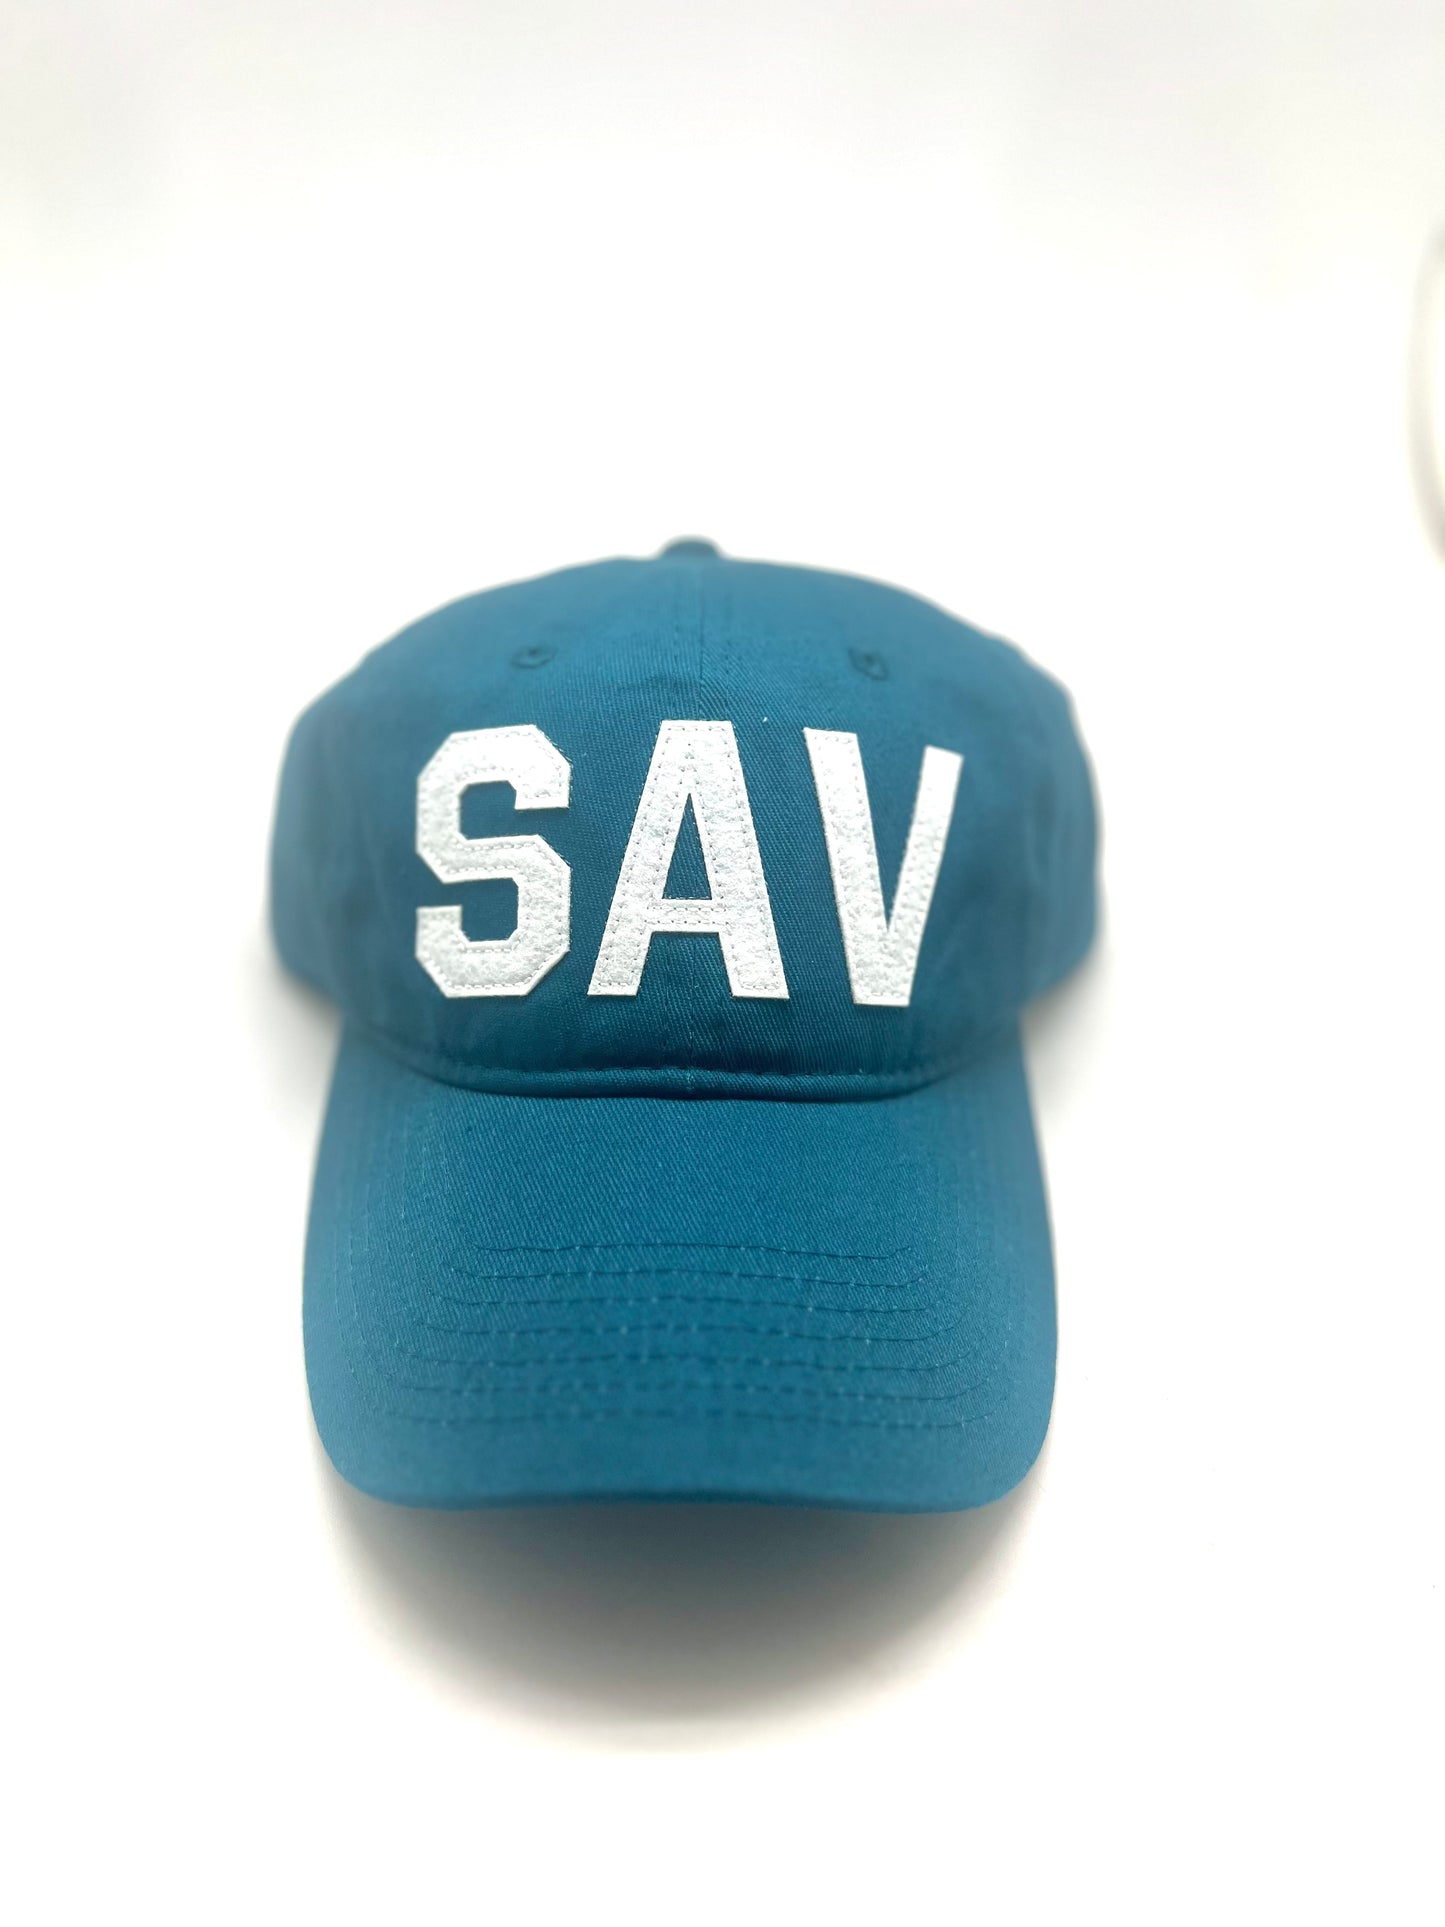 SAV - Savannah, GA Hat